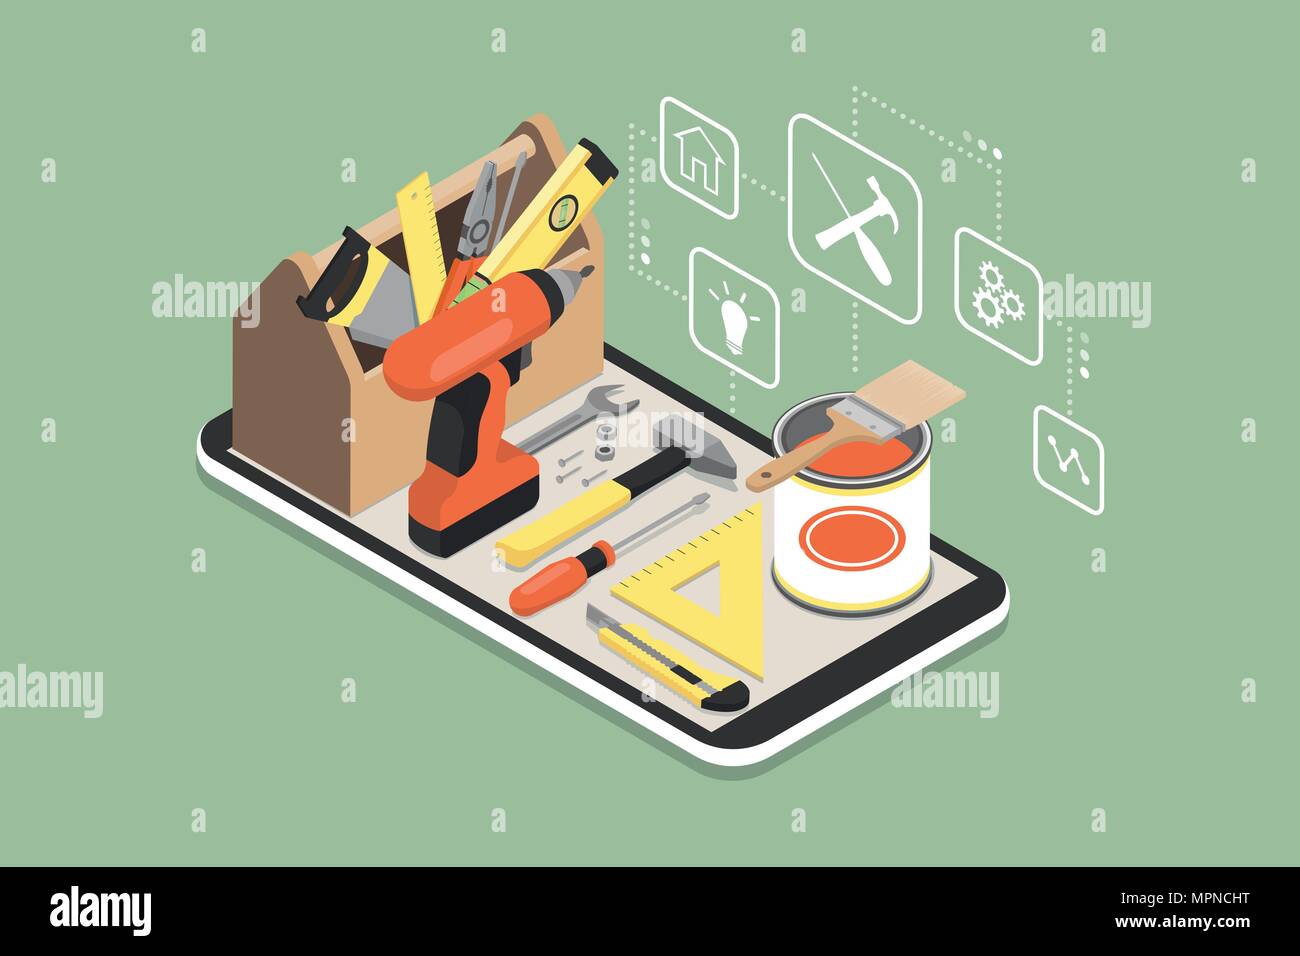 Fai da te e home ristrutturazione app: toolbox e strumenti su uno smartphone con icone Illustrazione Vettoriale